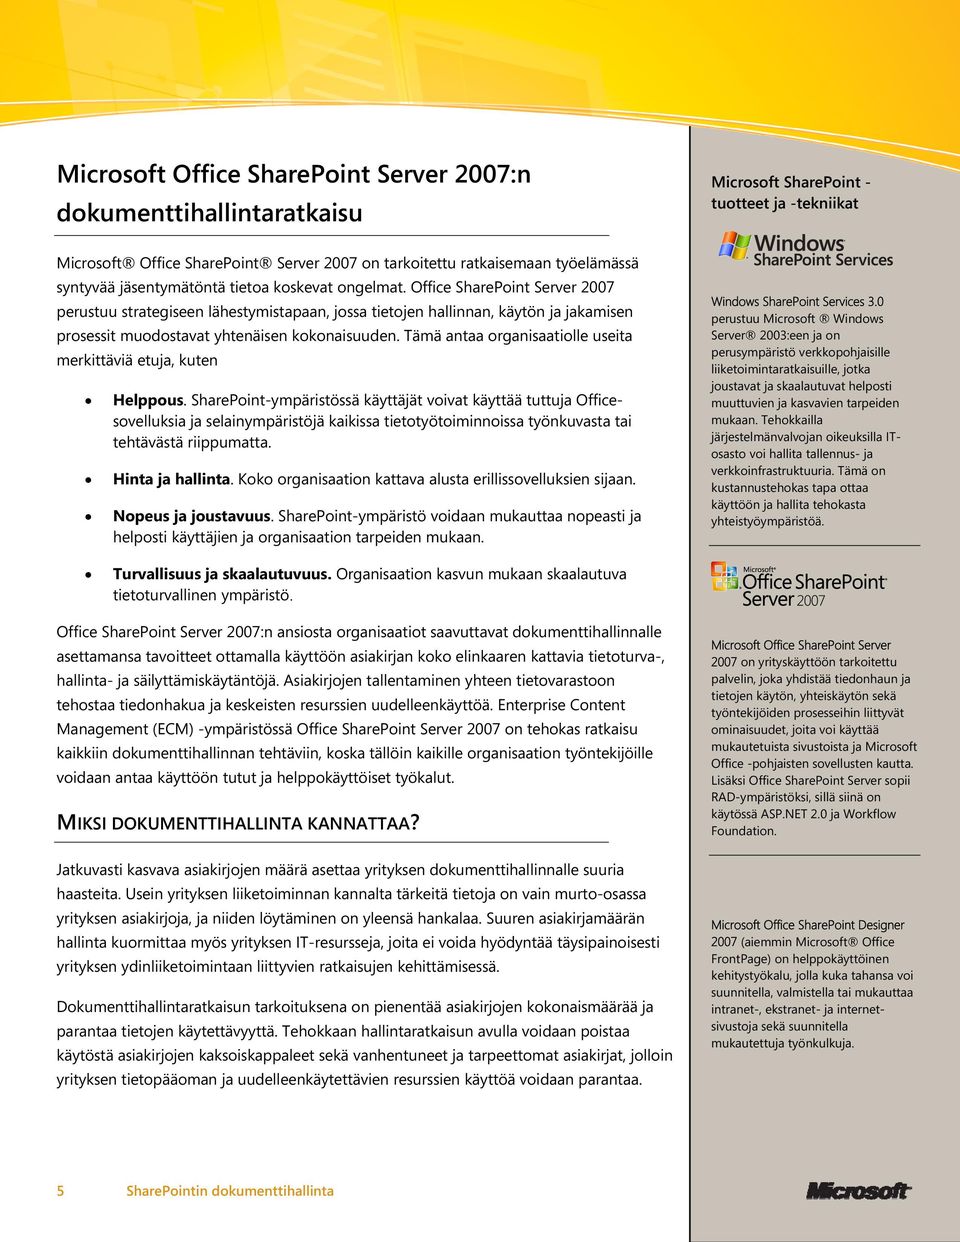 Office SharePoint Server 2007 perustuu strategiseen lähestymistapaan, jossa tietojen hallinnan, käytön ja jakamisen prosessit muodostavat yhtenäisen kokonaisuuden.